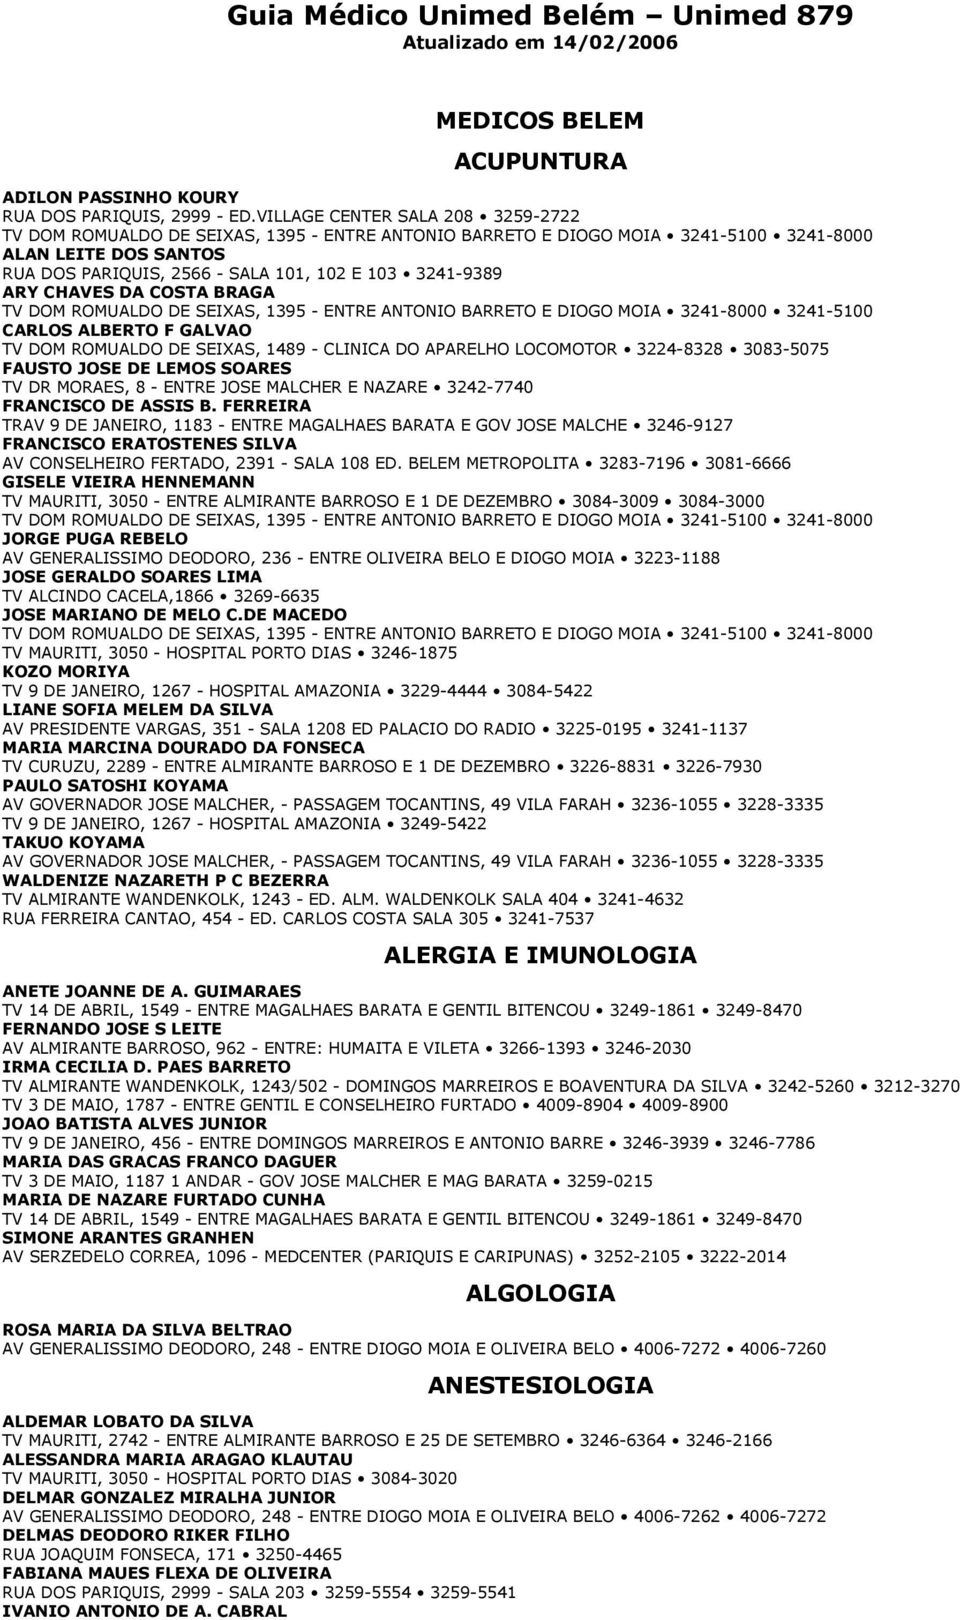 ARY CHAVES DA COSTA BRAGA TV DOM ROMUALDO DE SEIXAS, 1395 - ENTRE ANTONIO BARRETO E DIOGO MOIA 3241-8000 3241-5100 CARLOS ALBERTO F GALVAO TV DOM ROMUALDO DE SEIXAS, 1489 - CLINICA DO APARELHO